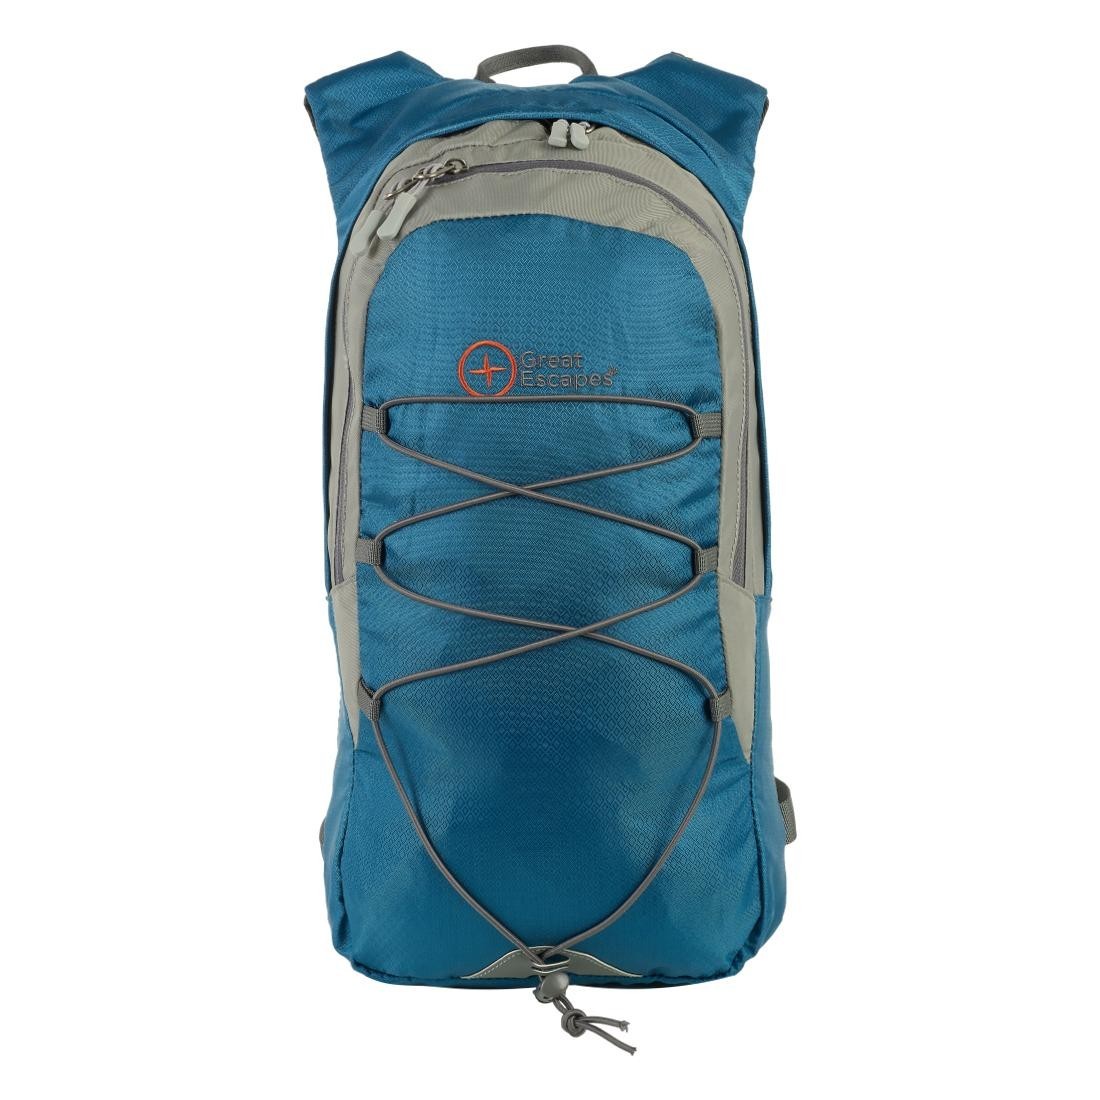 T. LIGHT 8 - Multipurpose backpack